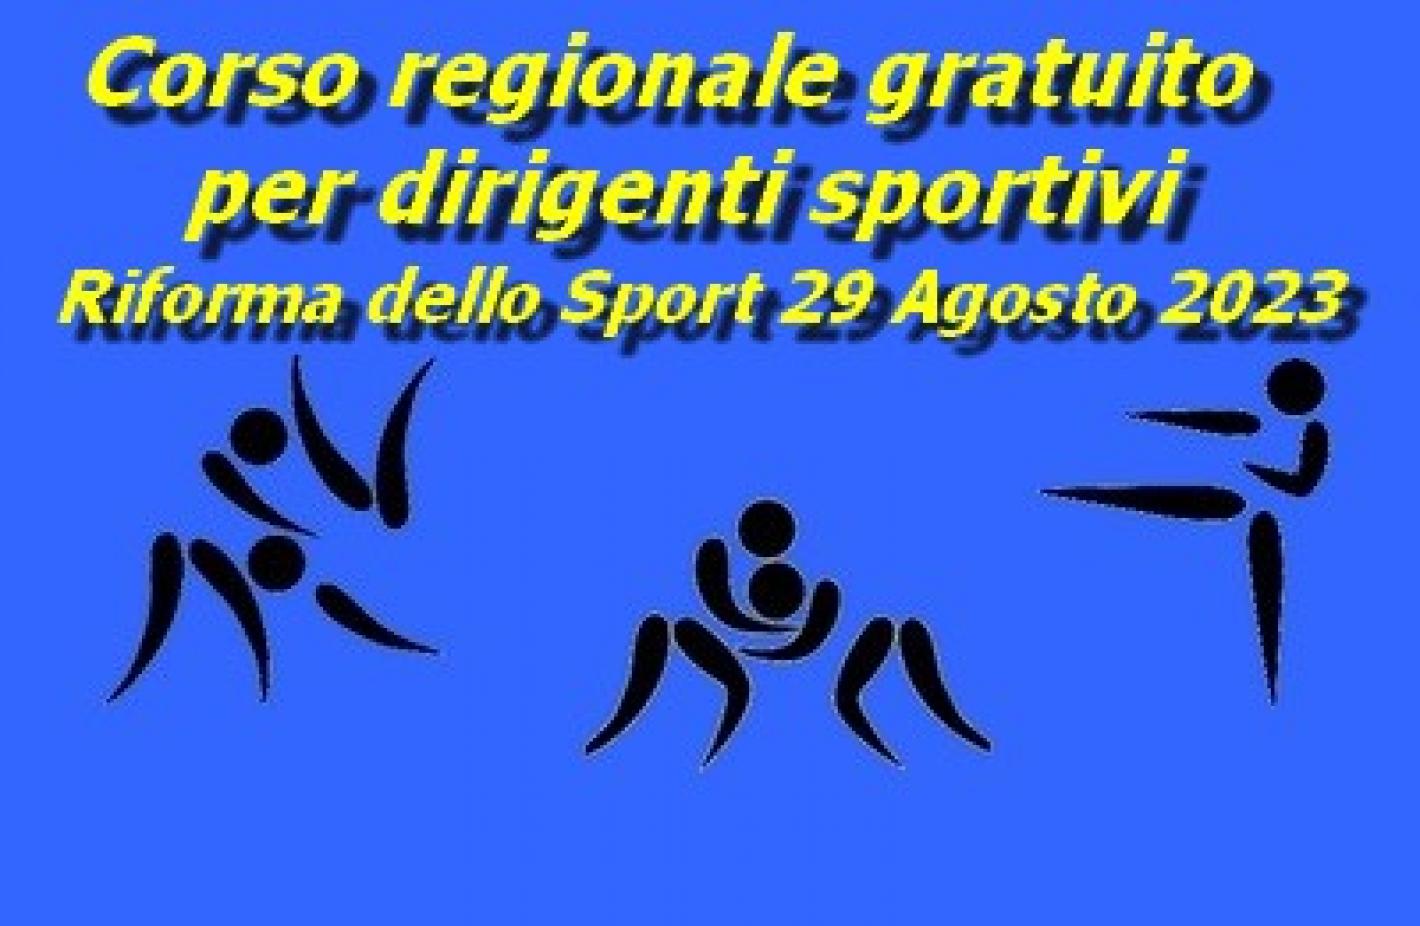 images/sardegna/News/News_2023/20230920_Corso_Riforma/medium/Riforma_sport.jpg